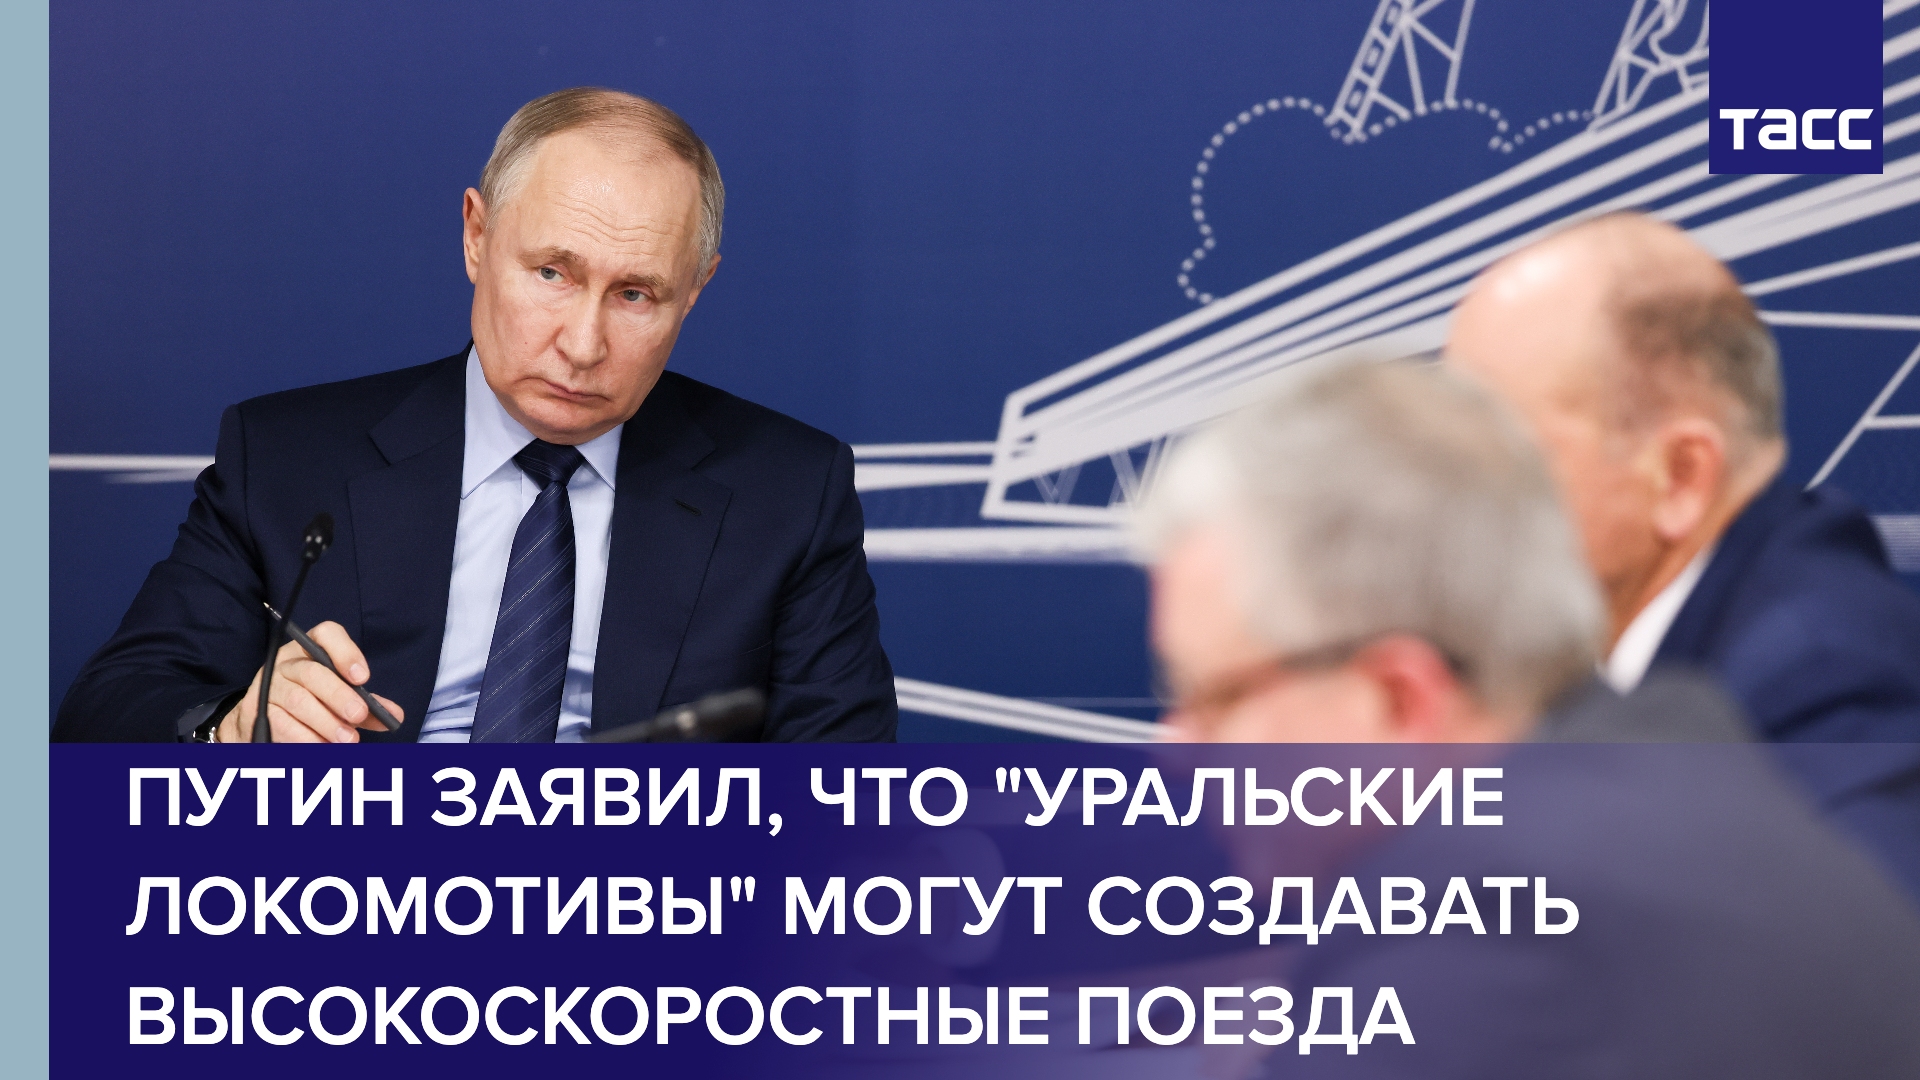 Путин заявил, что "Уральские локомотивы" могут создавать высокоскоростные поезда